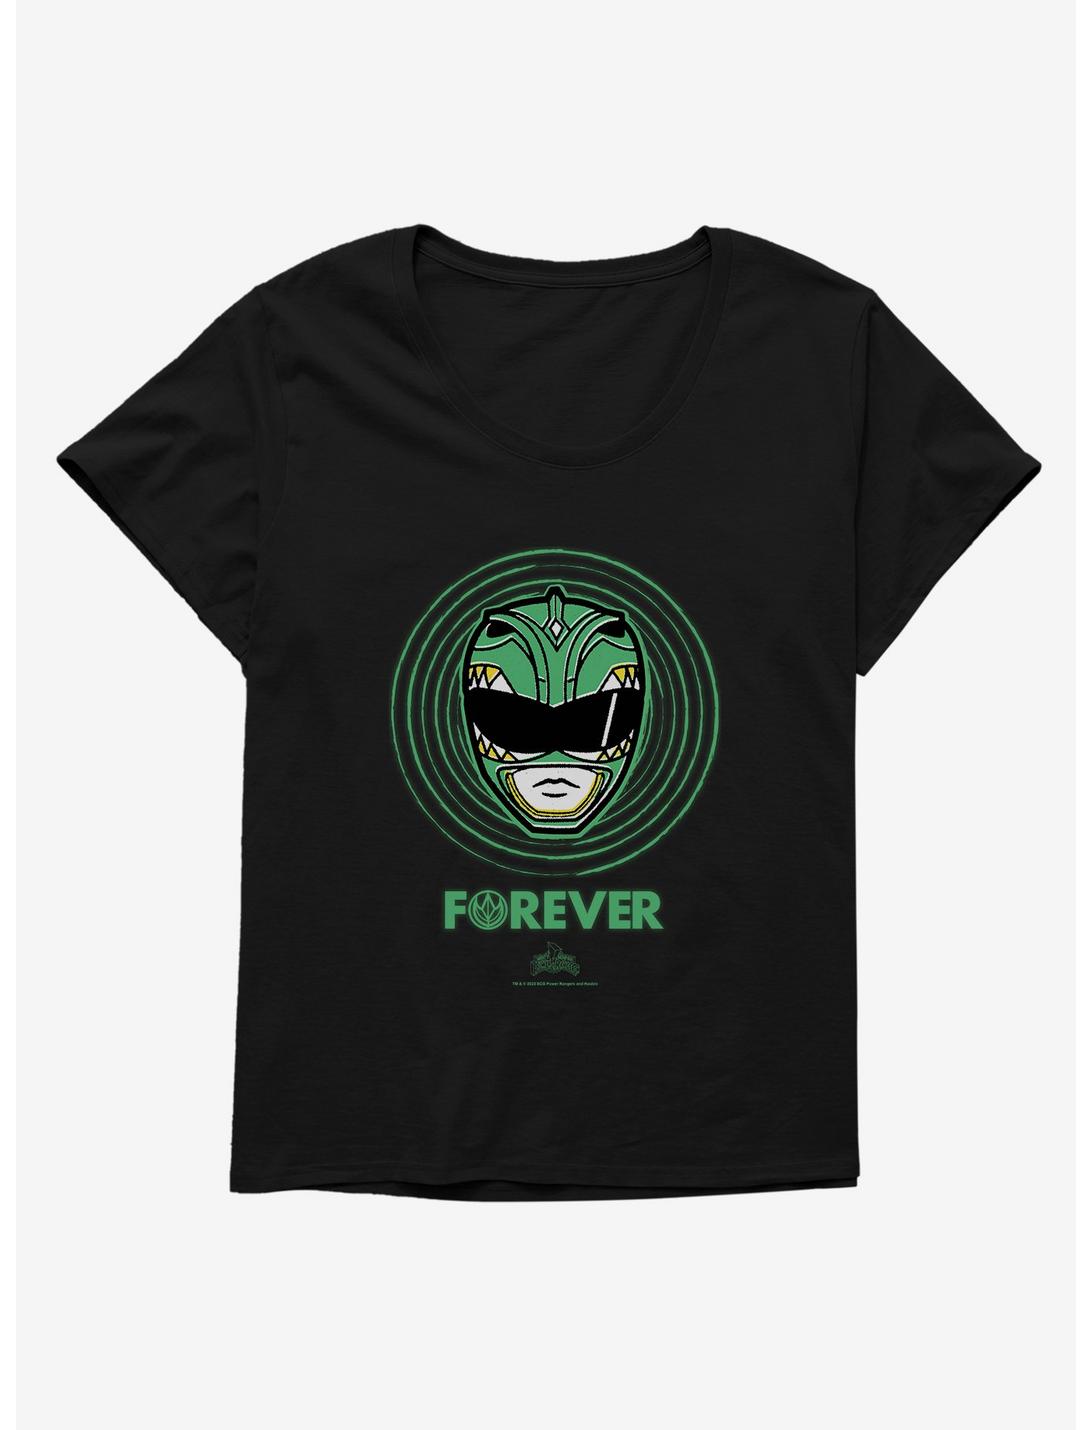 Mighty Morphin Power Rangers Green Ranger Forever Girls T-Shirt Plus Size, , hi-res